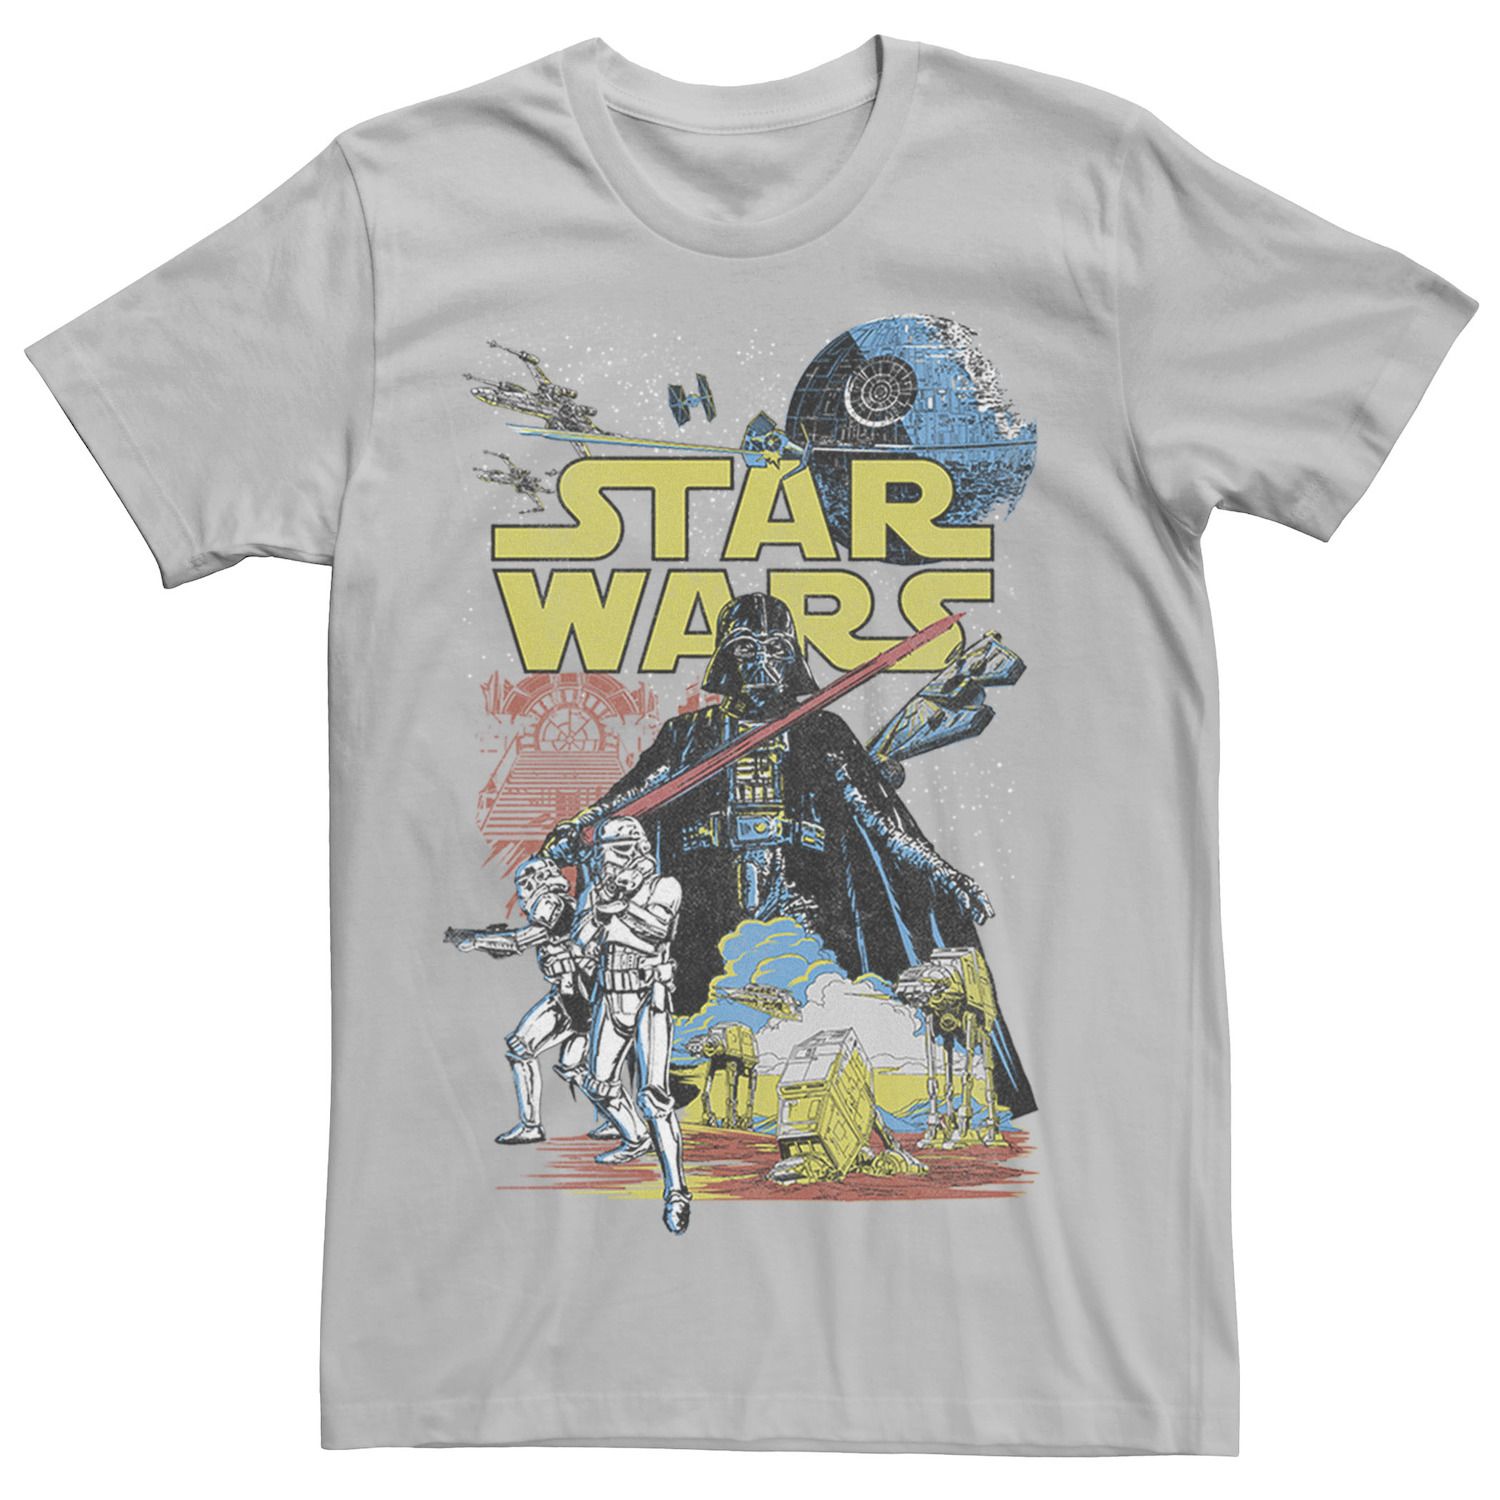 Мужская классическая футболка с графическим плакатом Rebel Star Wars, серебристый мужская классическая футболка с графическим плакатом rebel white star wars белый